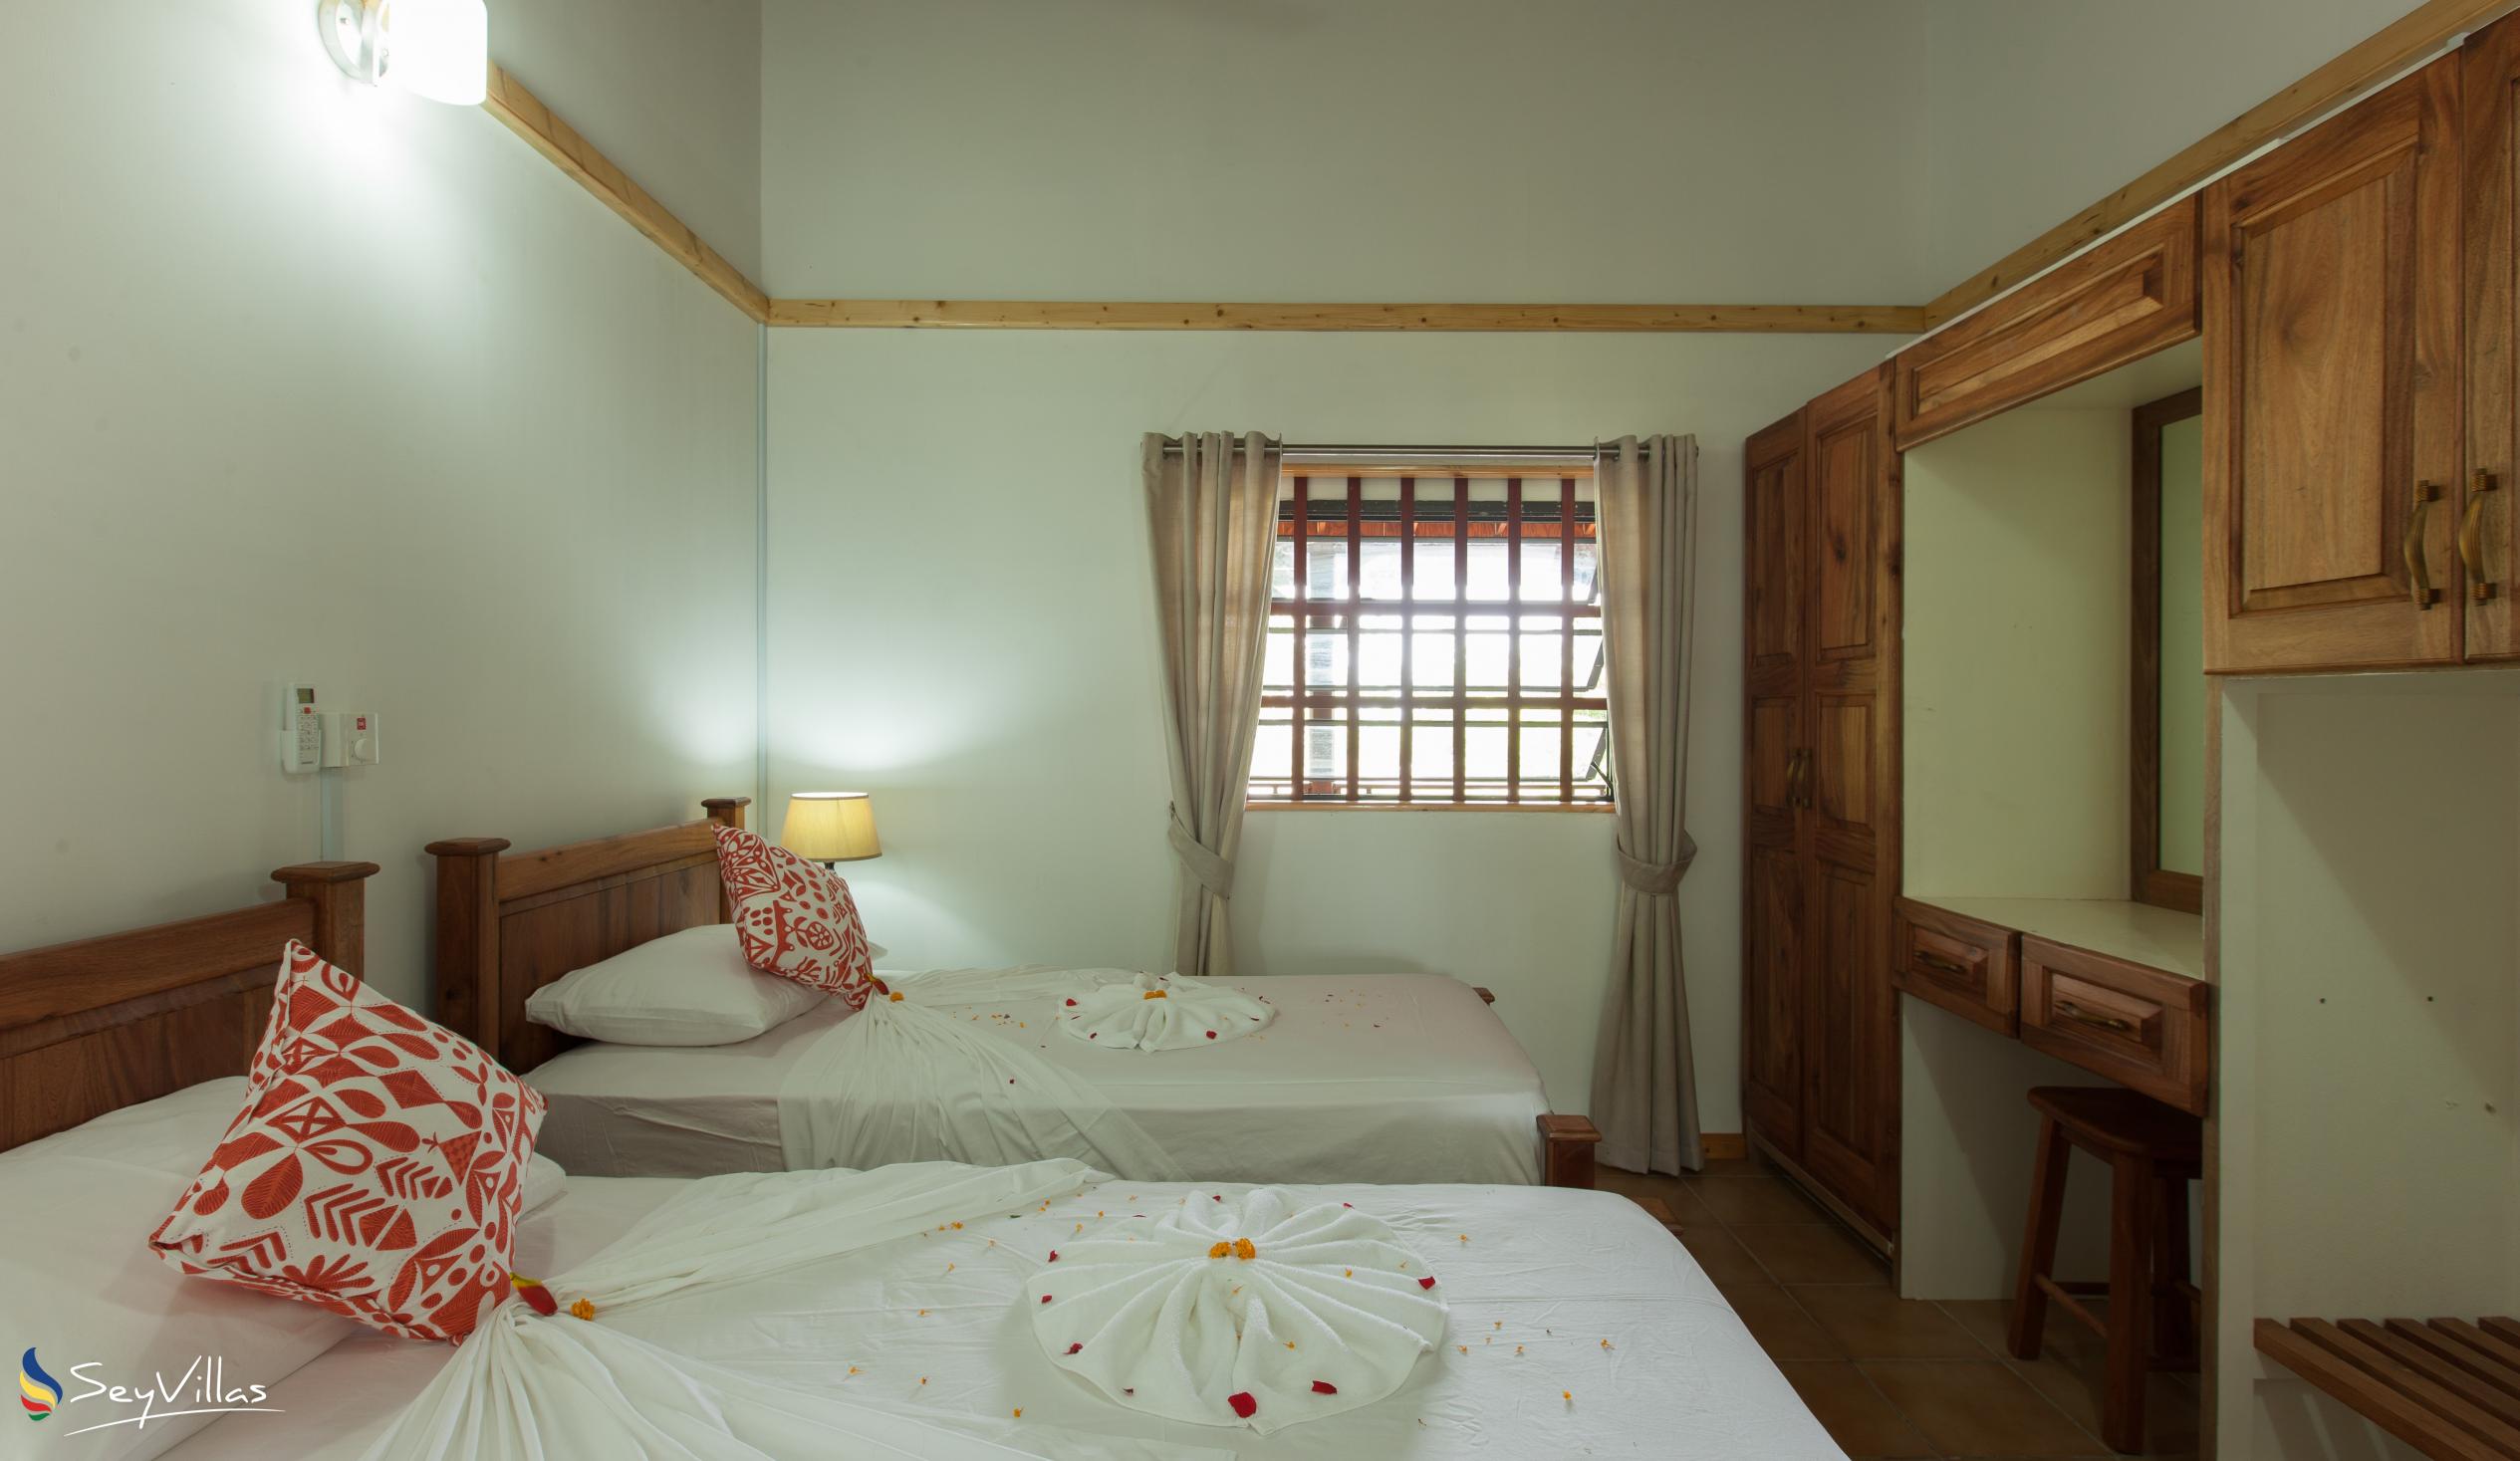 Foto 44: Heliconia Grove - Villa 3 chambres doubles - Praslin (Seychelles)